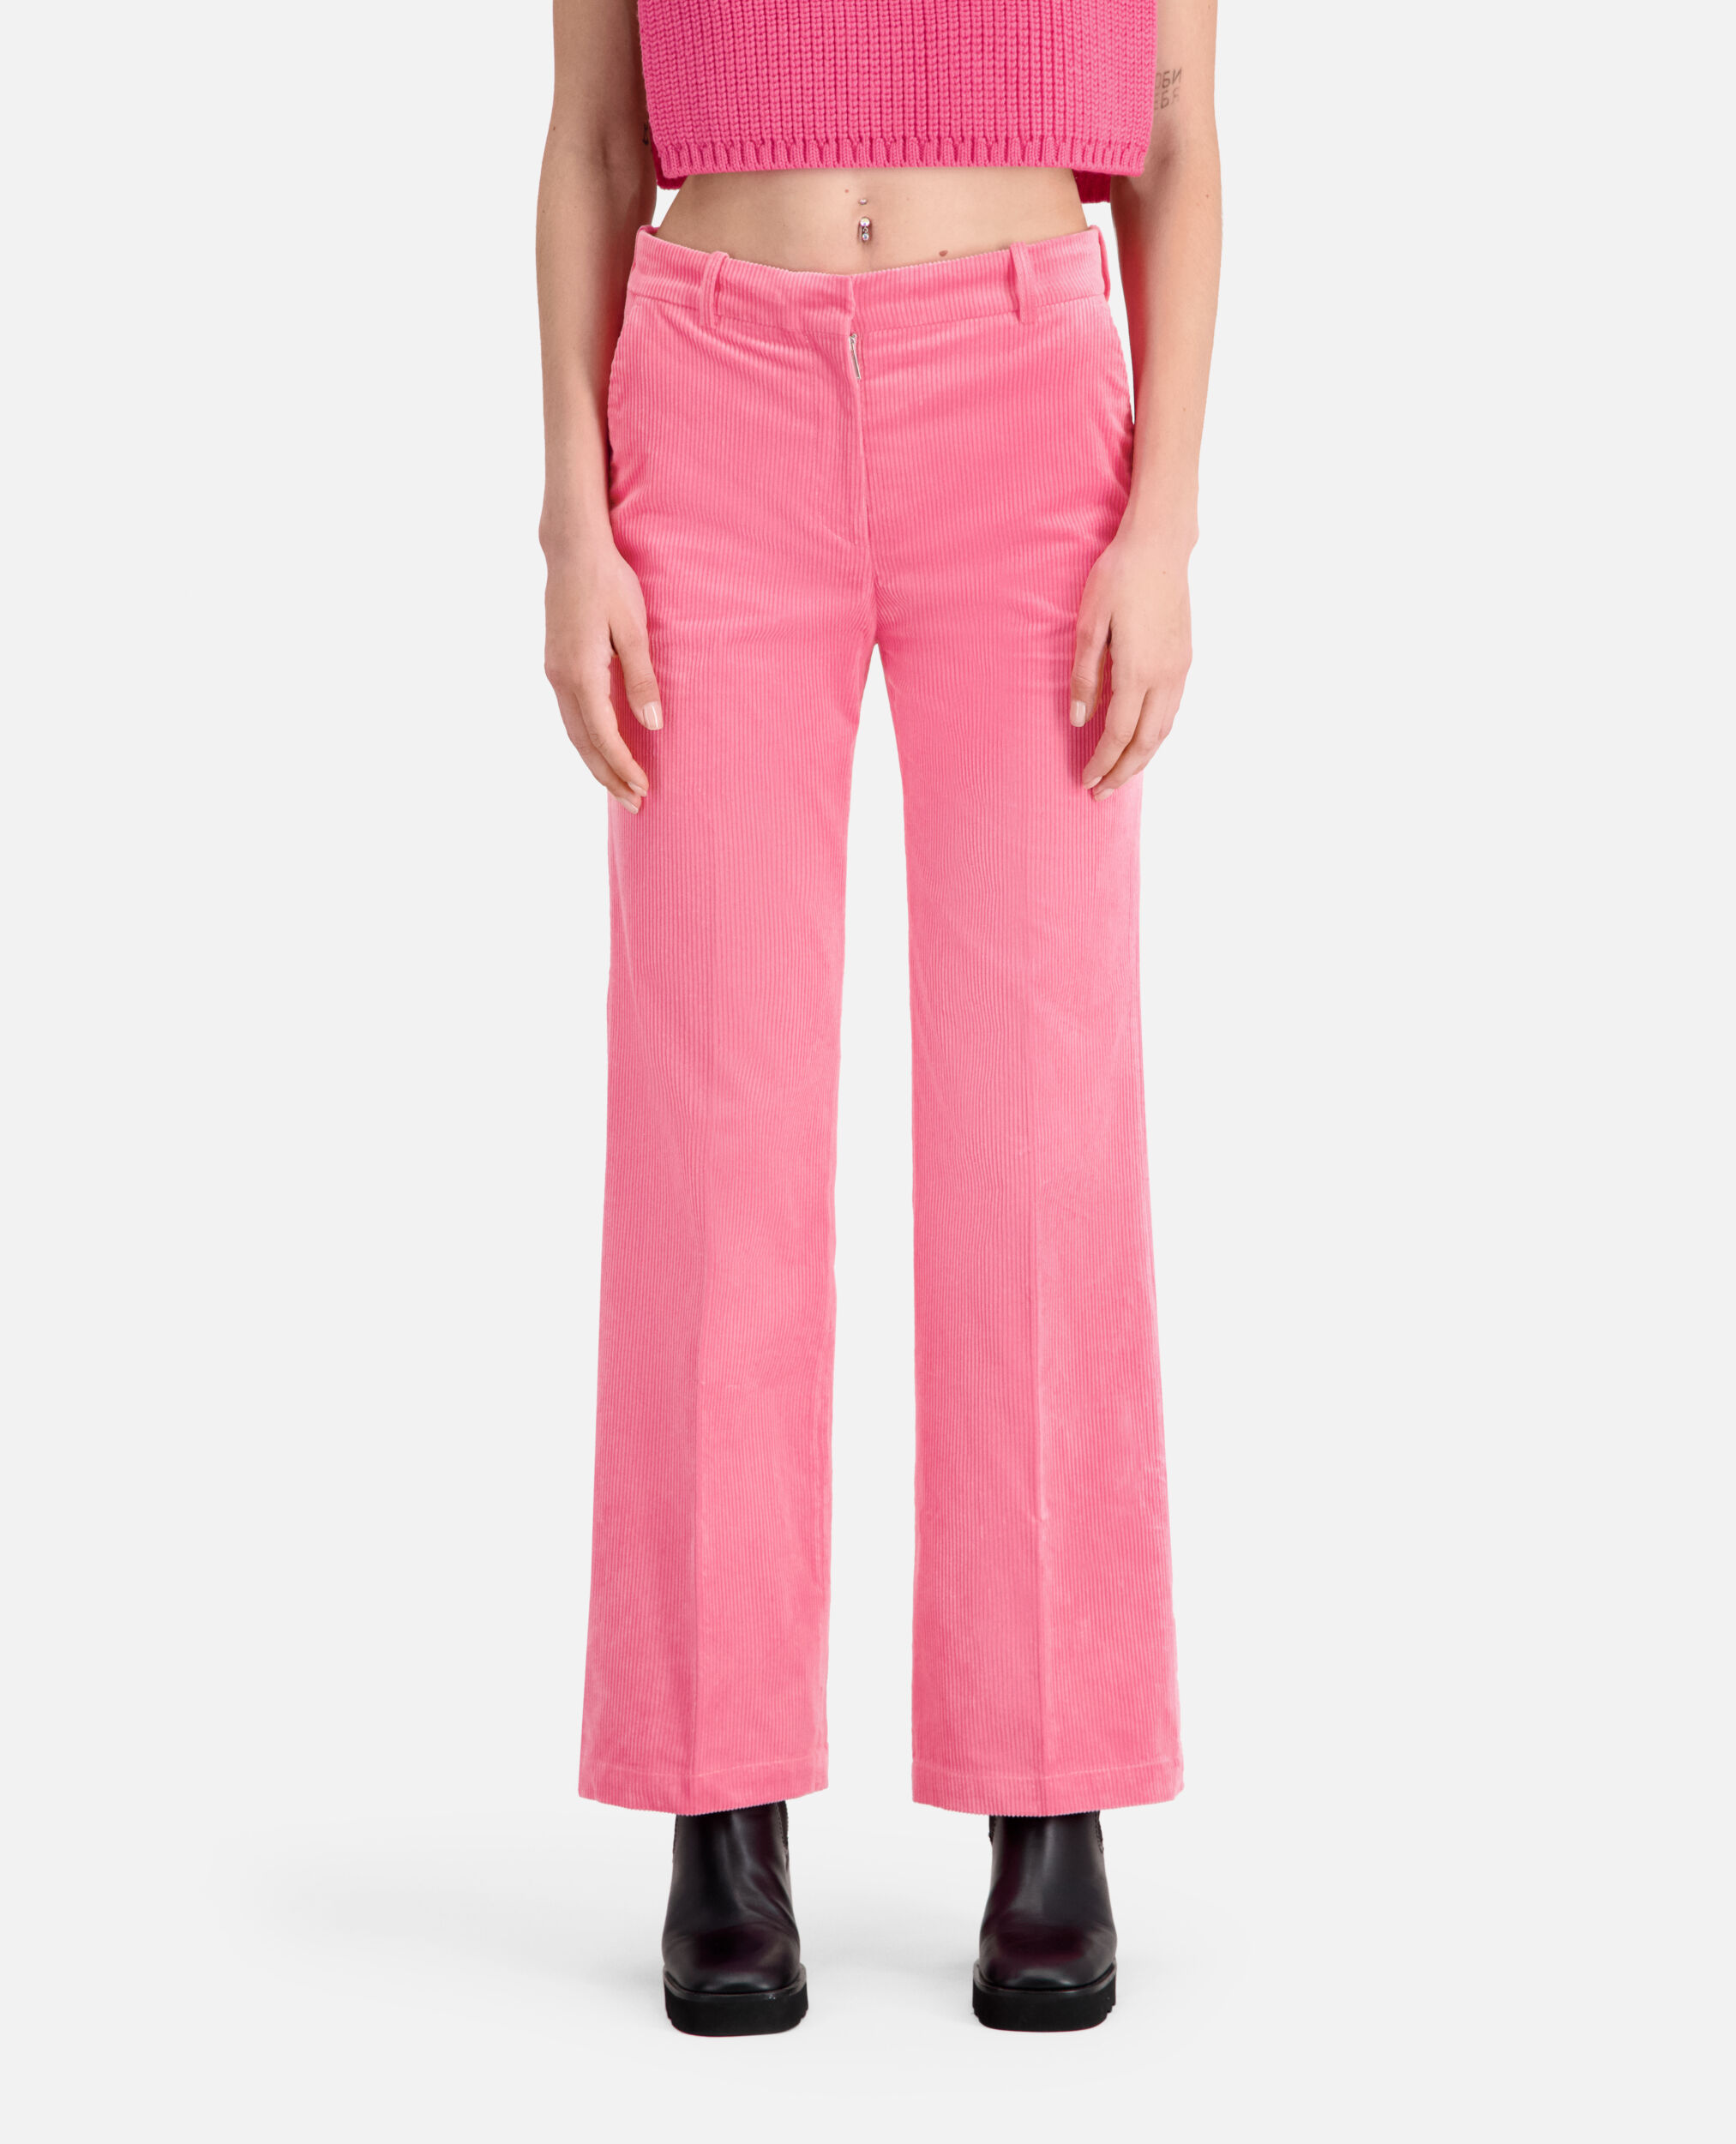 Pantalon rose en velours côtelé, OLD PINK, hi-res image number null